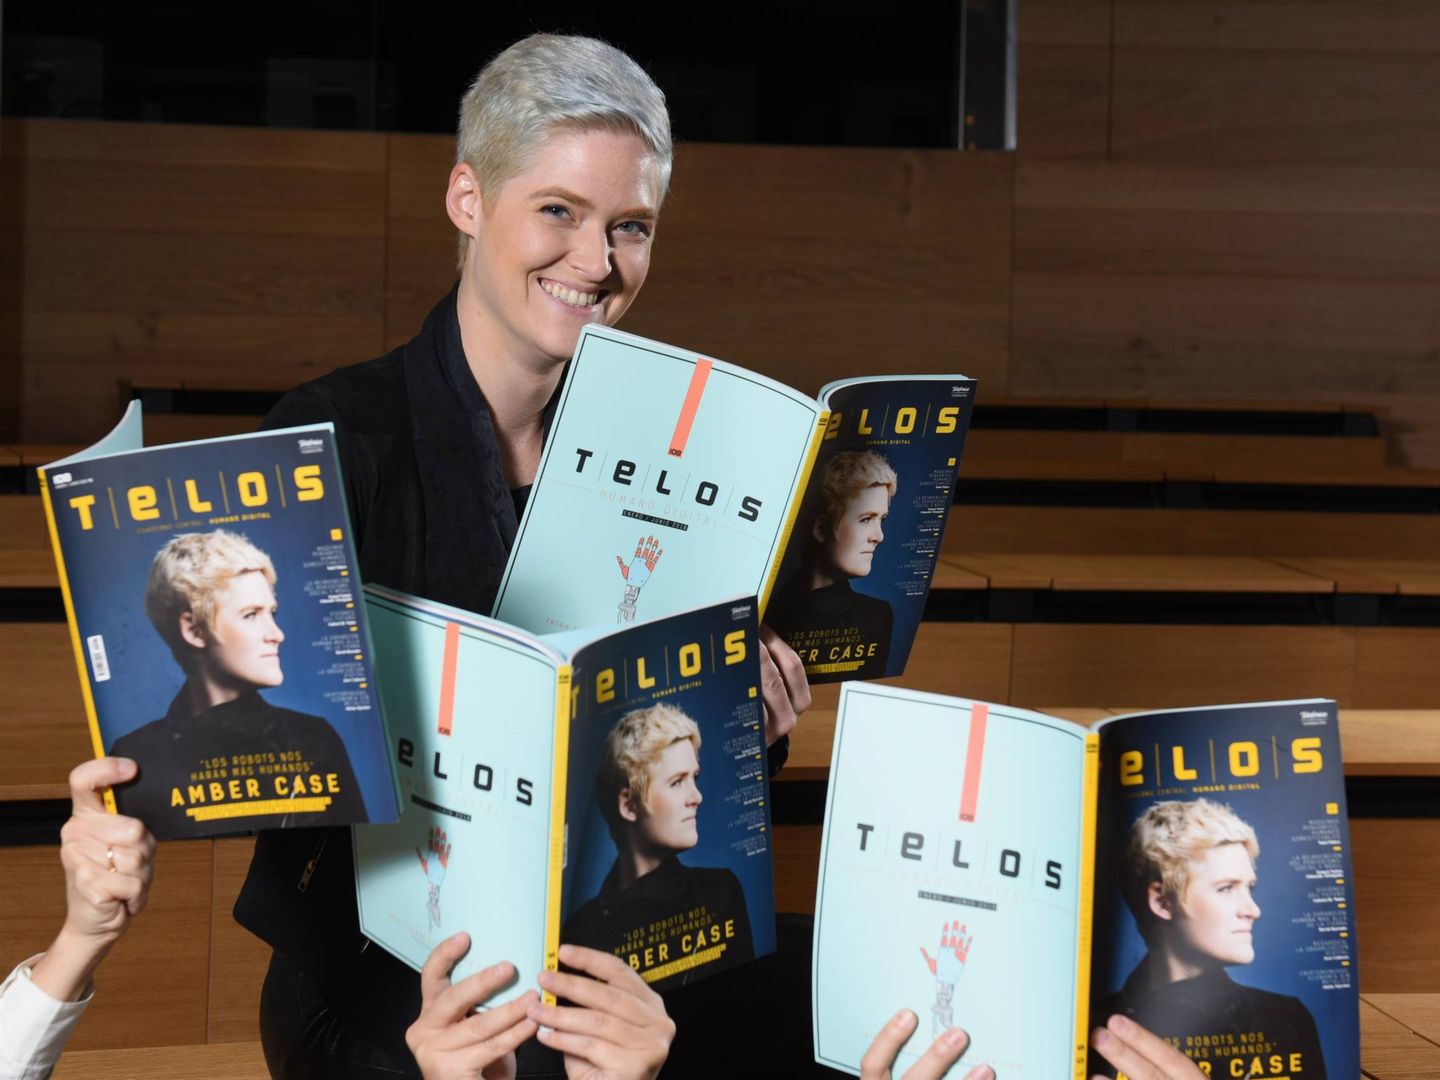 Amber Case, en su visita a Madrid, promociona con muchísima sutileza la revista Telos, editada por la Fundación Telefónica.